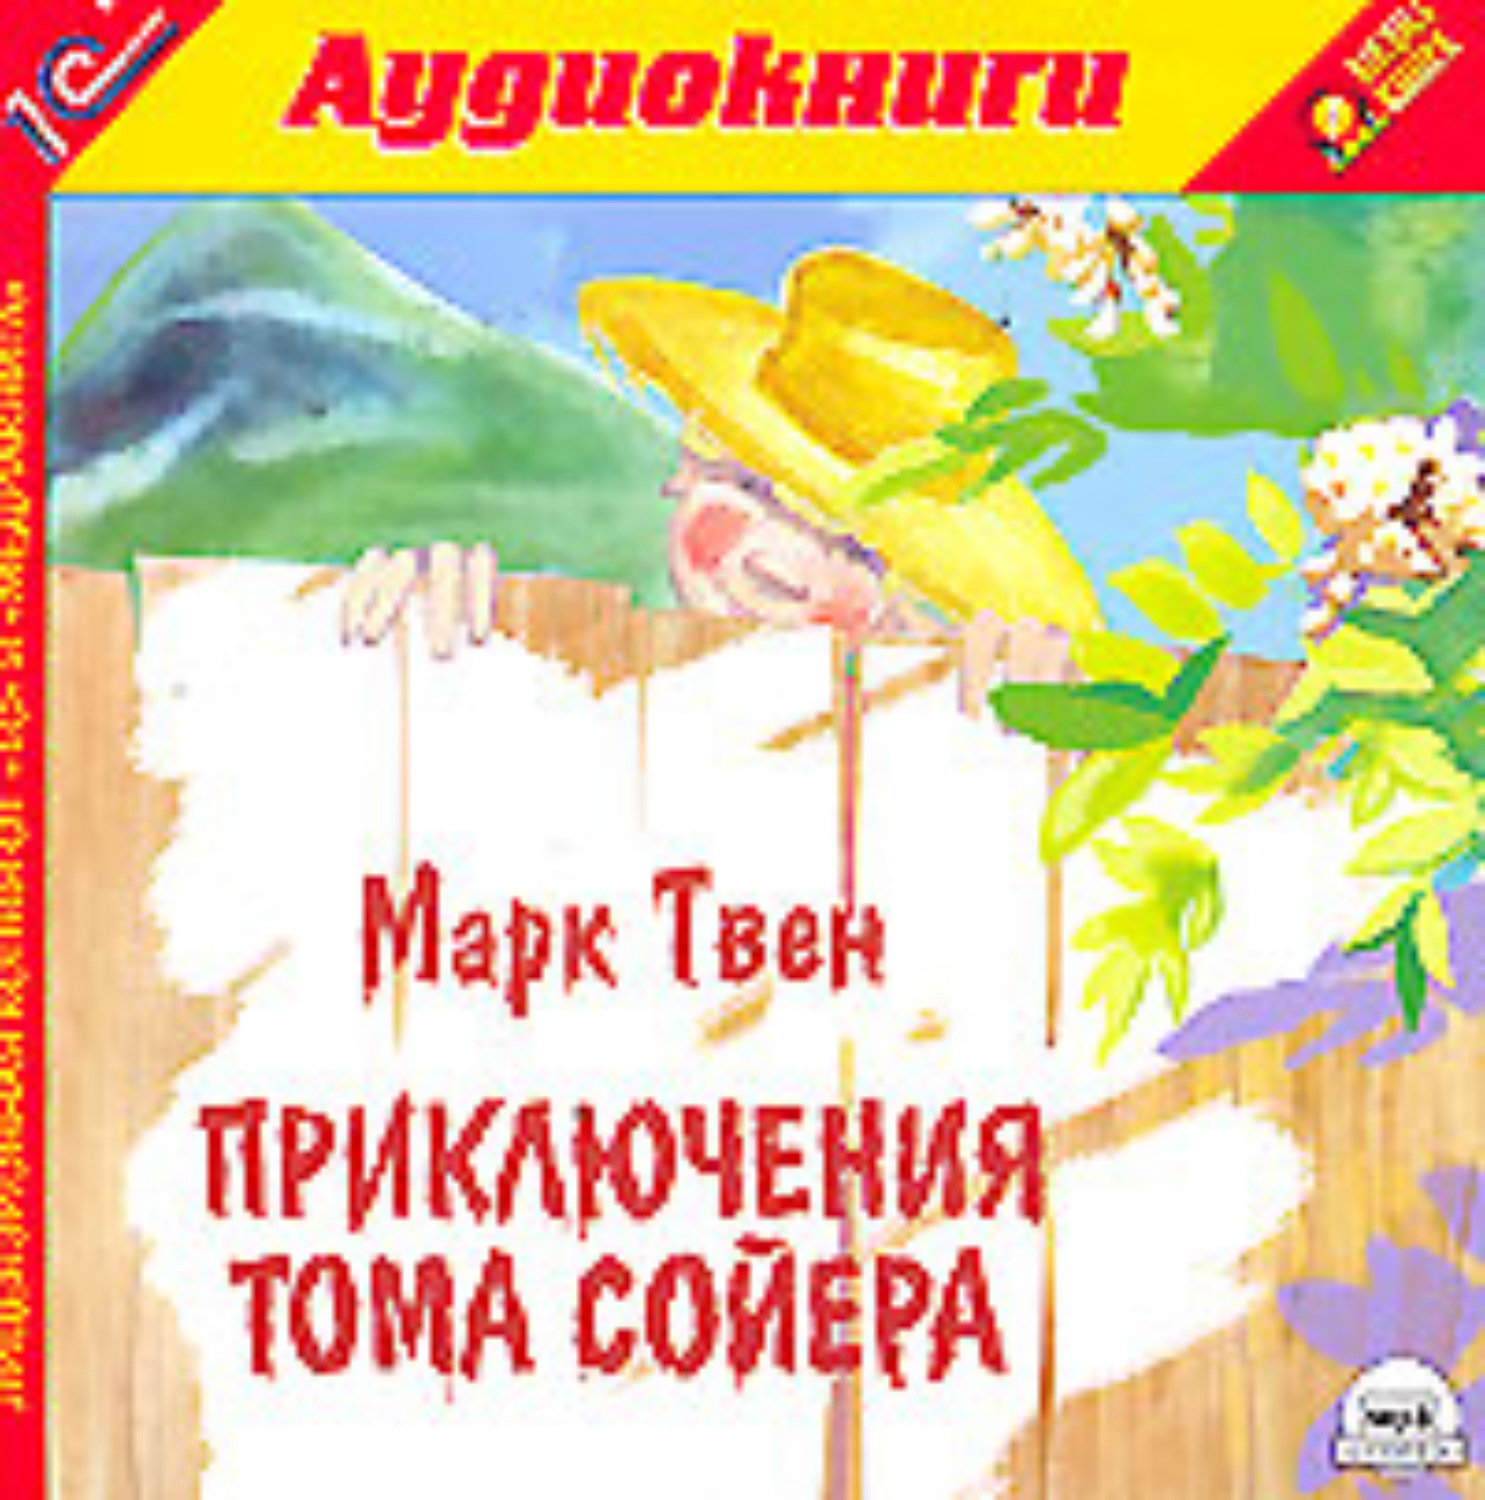 Аудиокнига приключение марка твена. Приключения Тома Сойера аудиокнига. Книжка приключения Тома Сойера аудио.